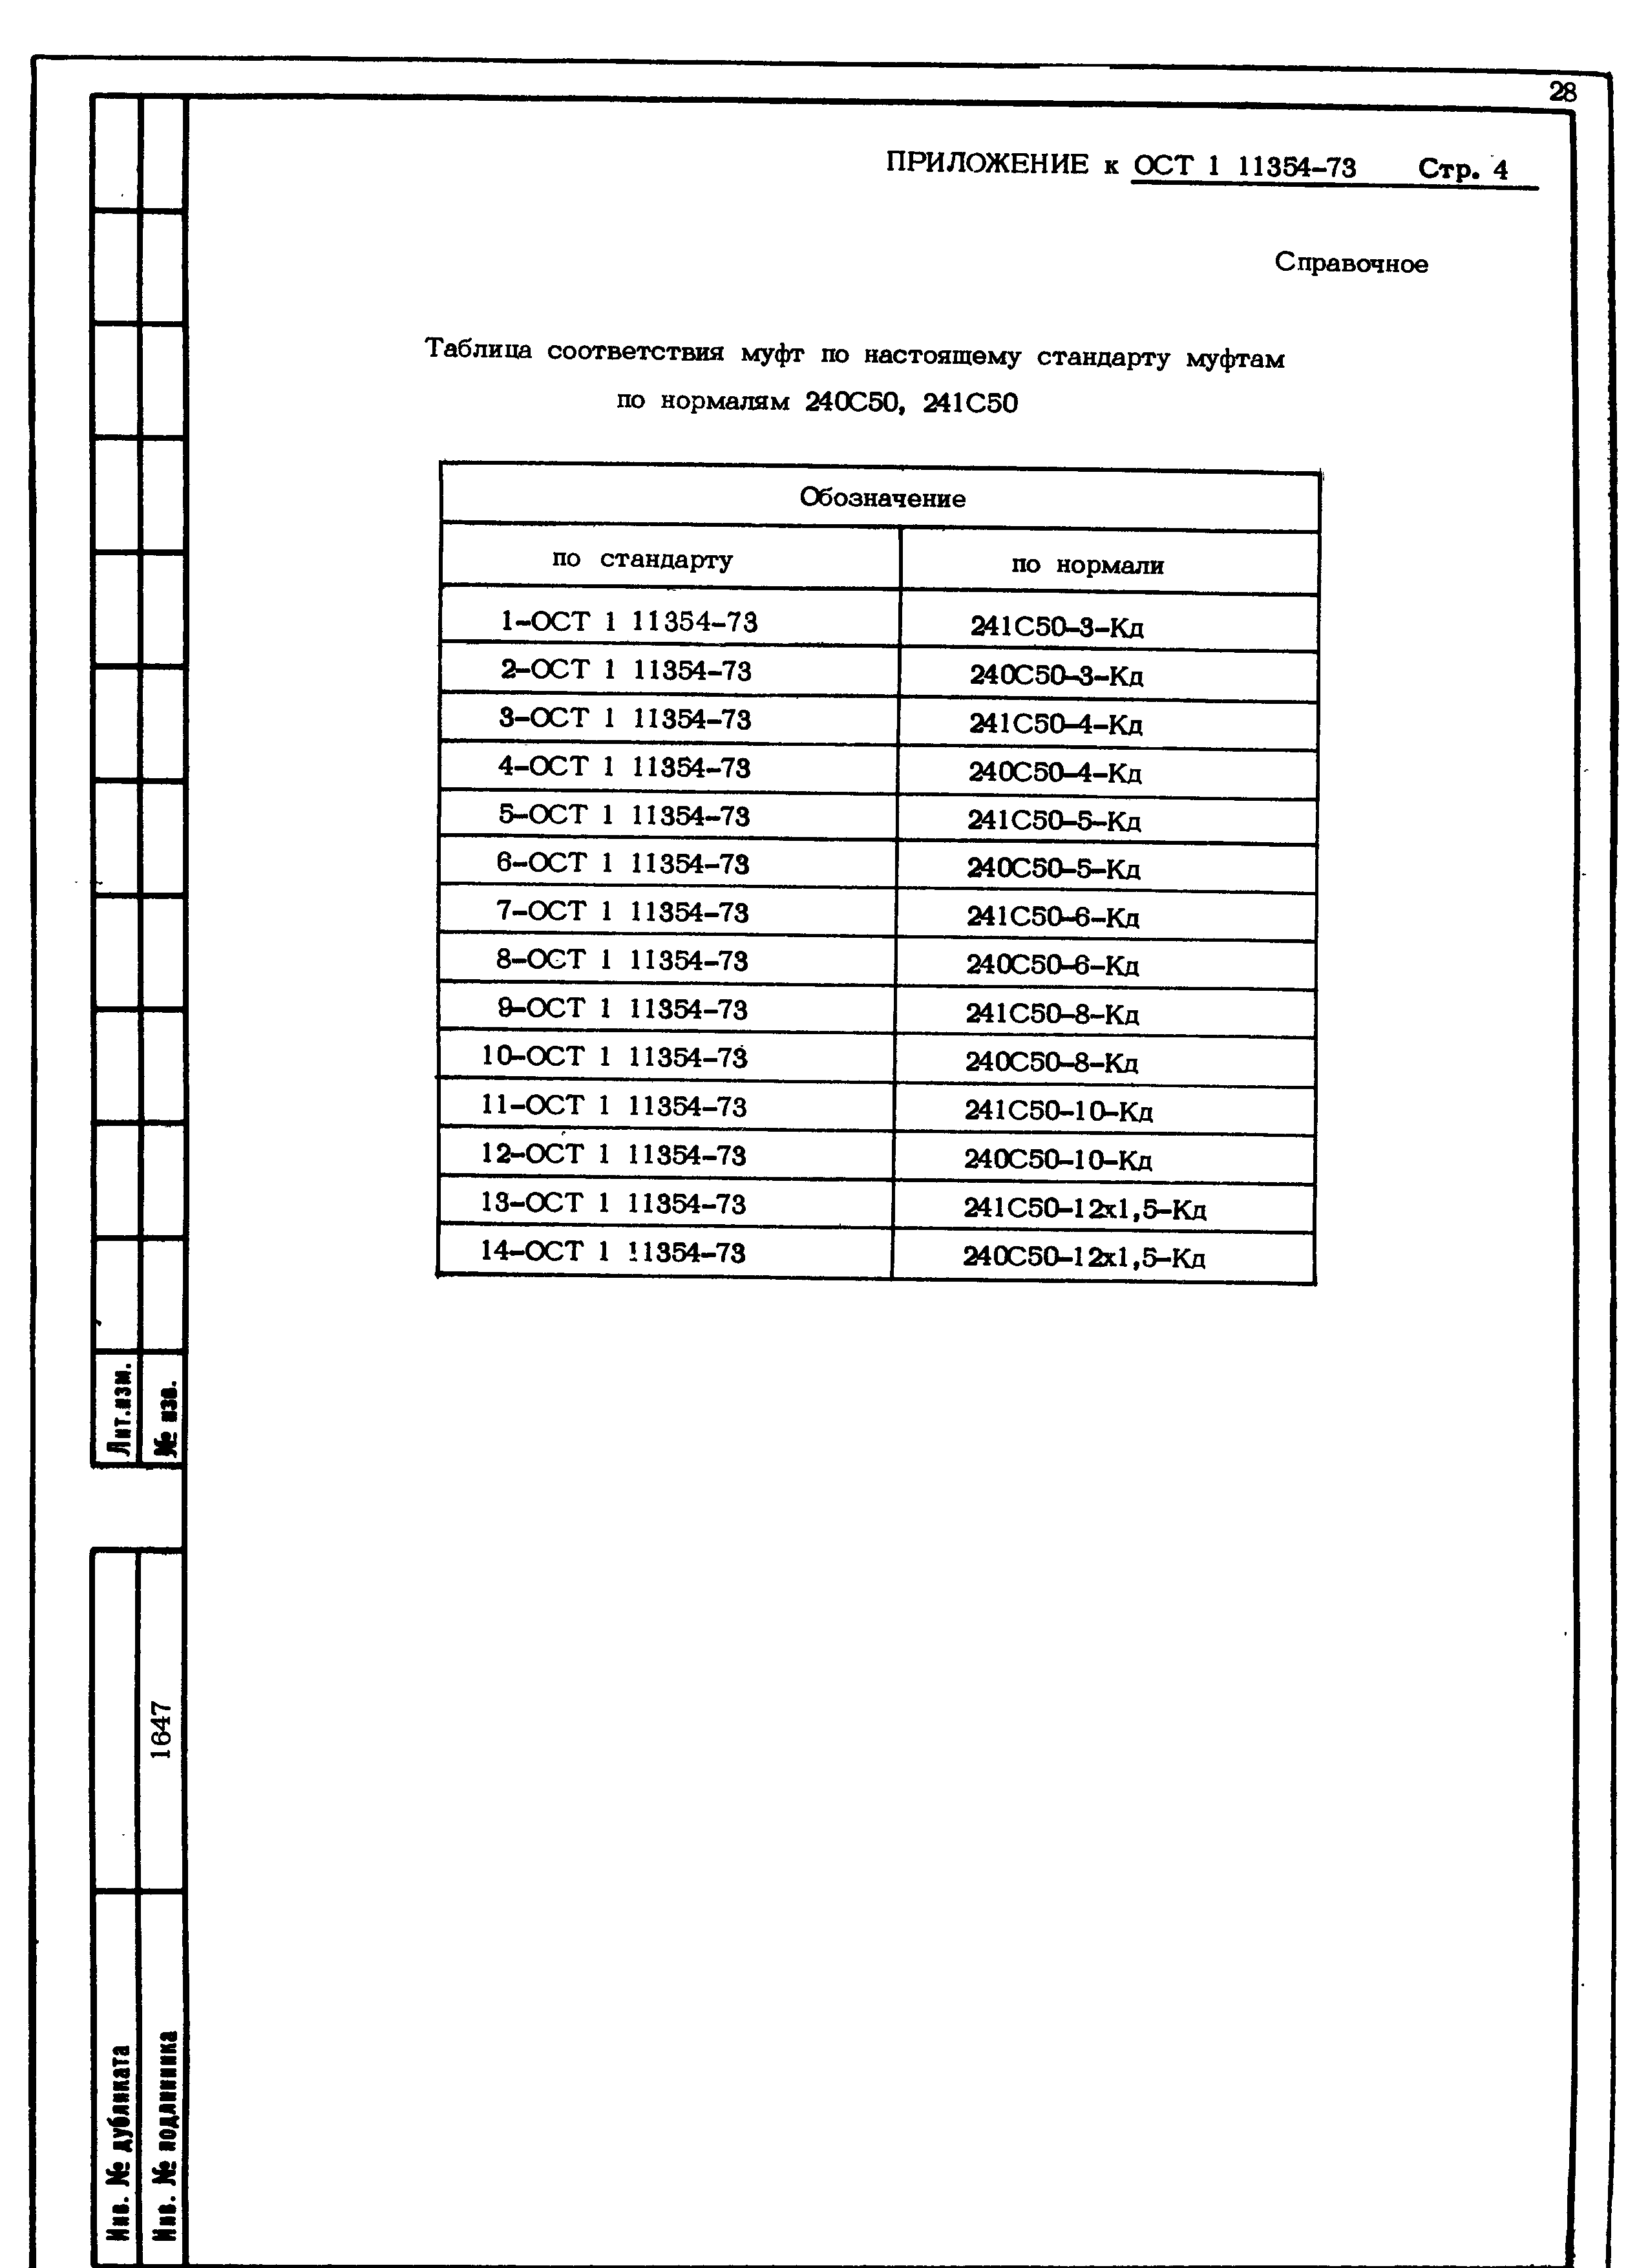 ОСТ 1 11354-73